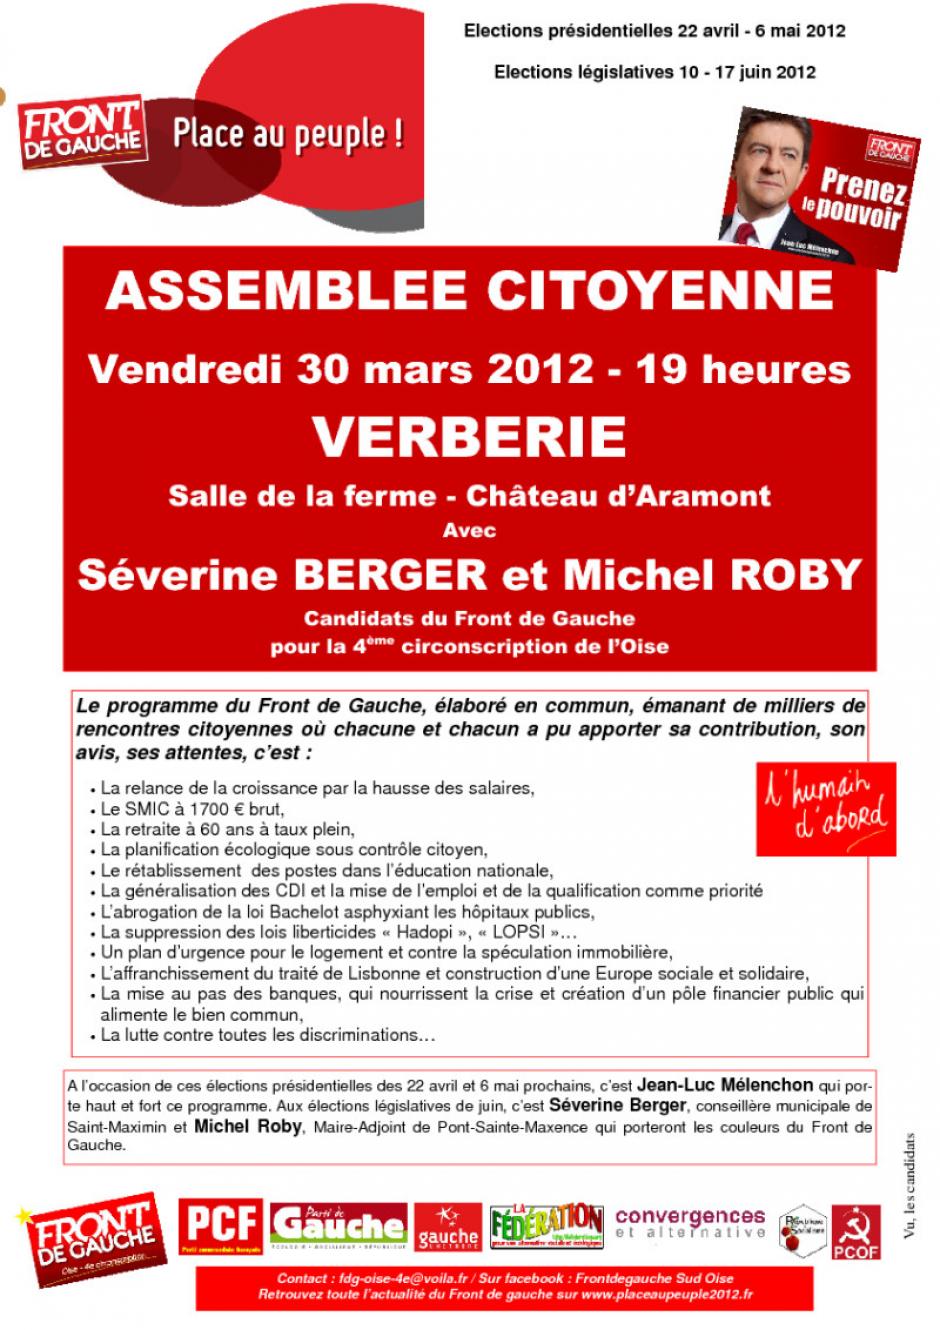 30 mars, Verberie - Assemblée citoyenne du Front de gauche - Affiche